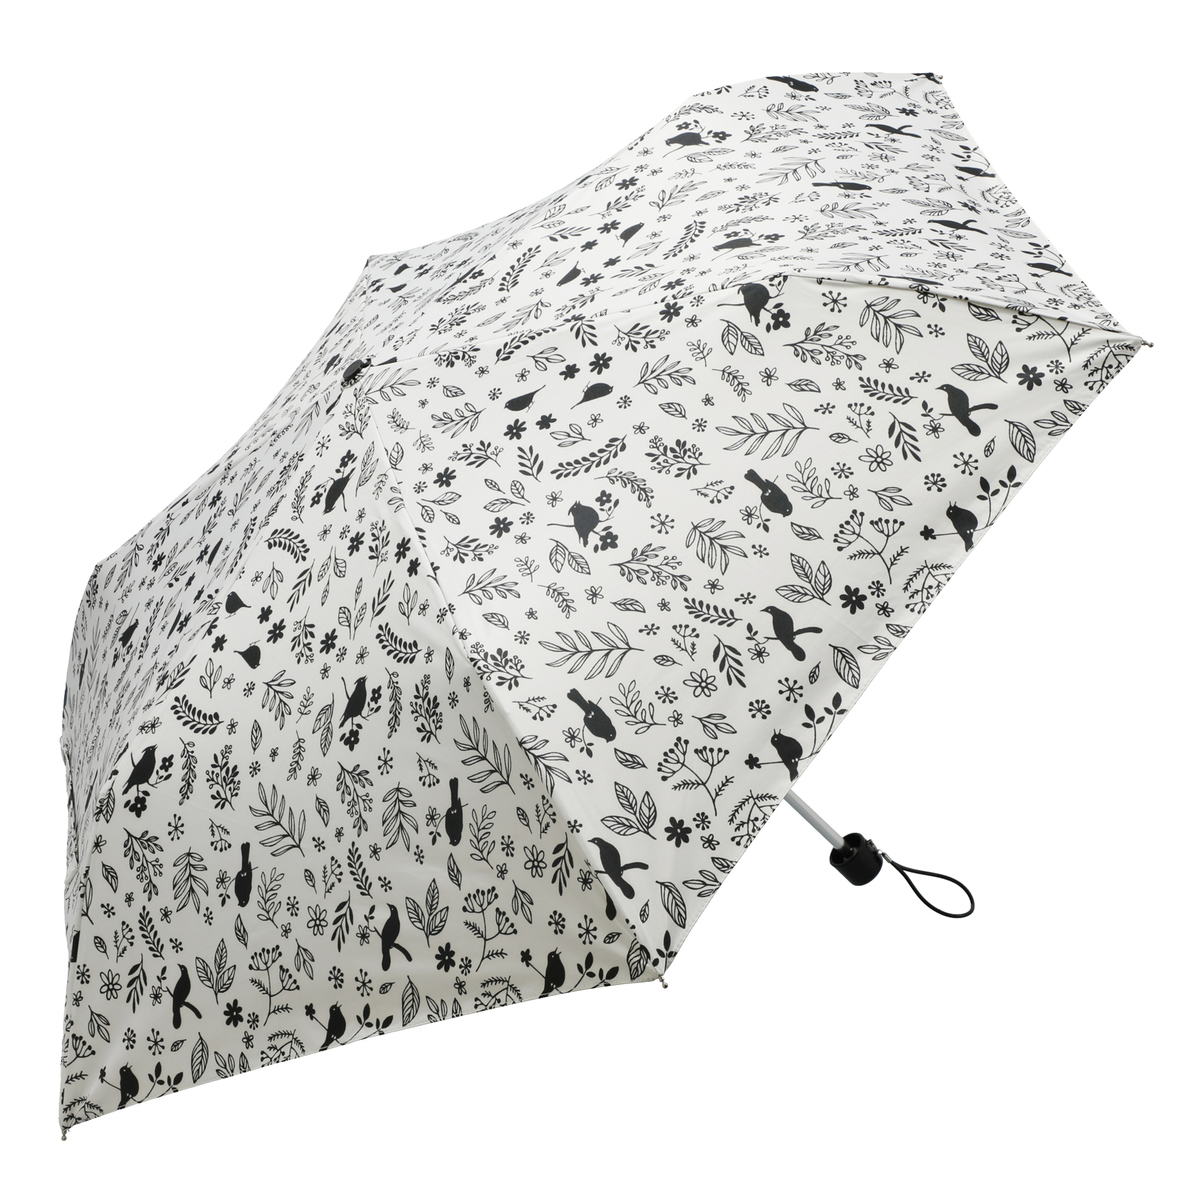  ルナジュメール UV+1級遮光+晴雨兼用 モノクロ 折傘  バード柄オフホワイト